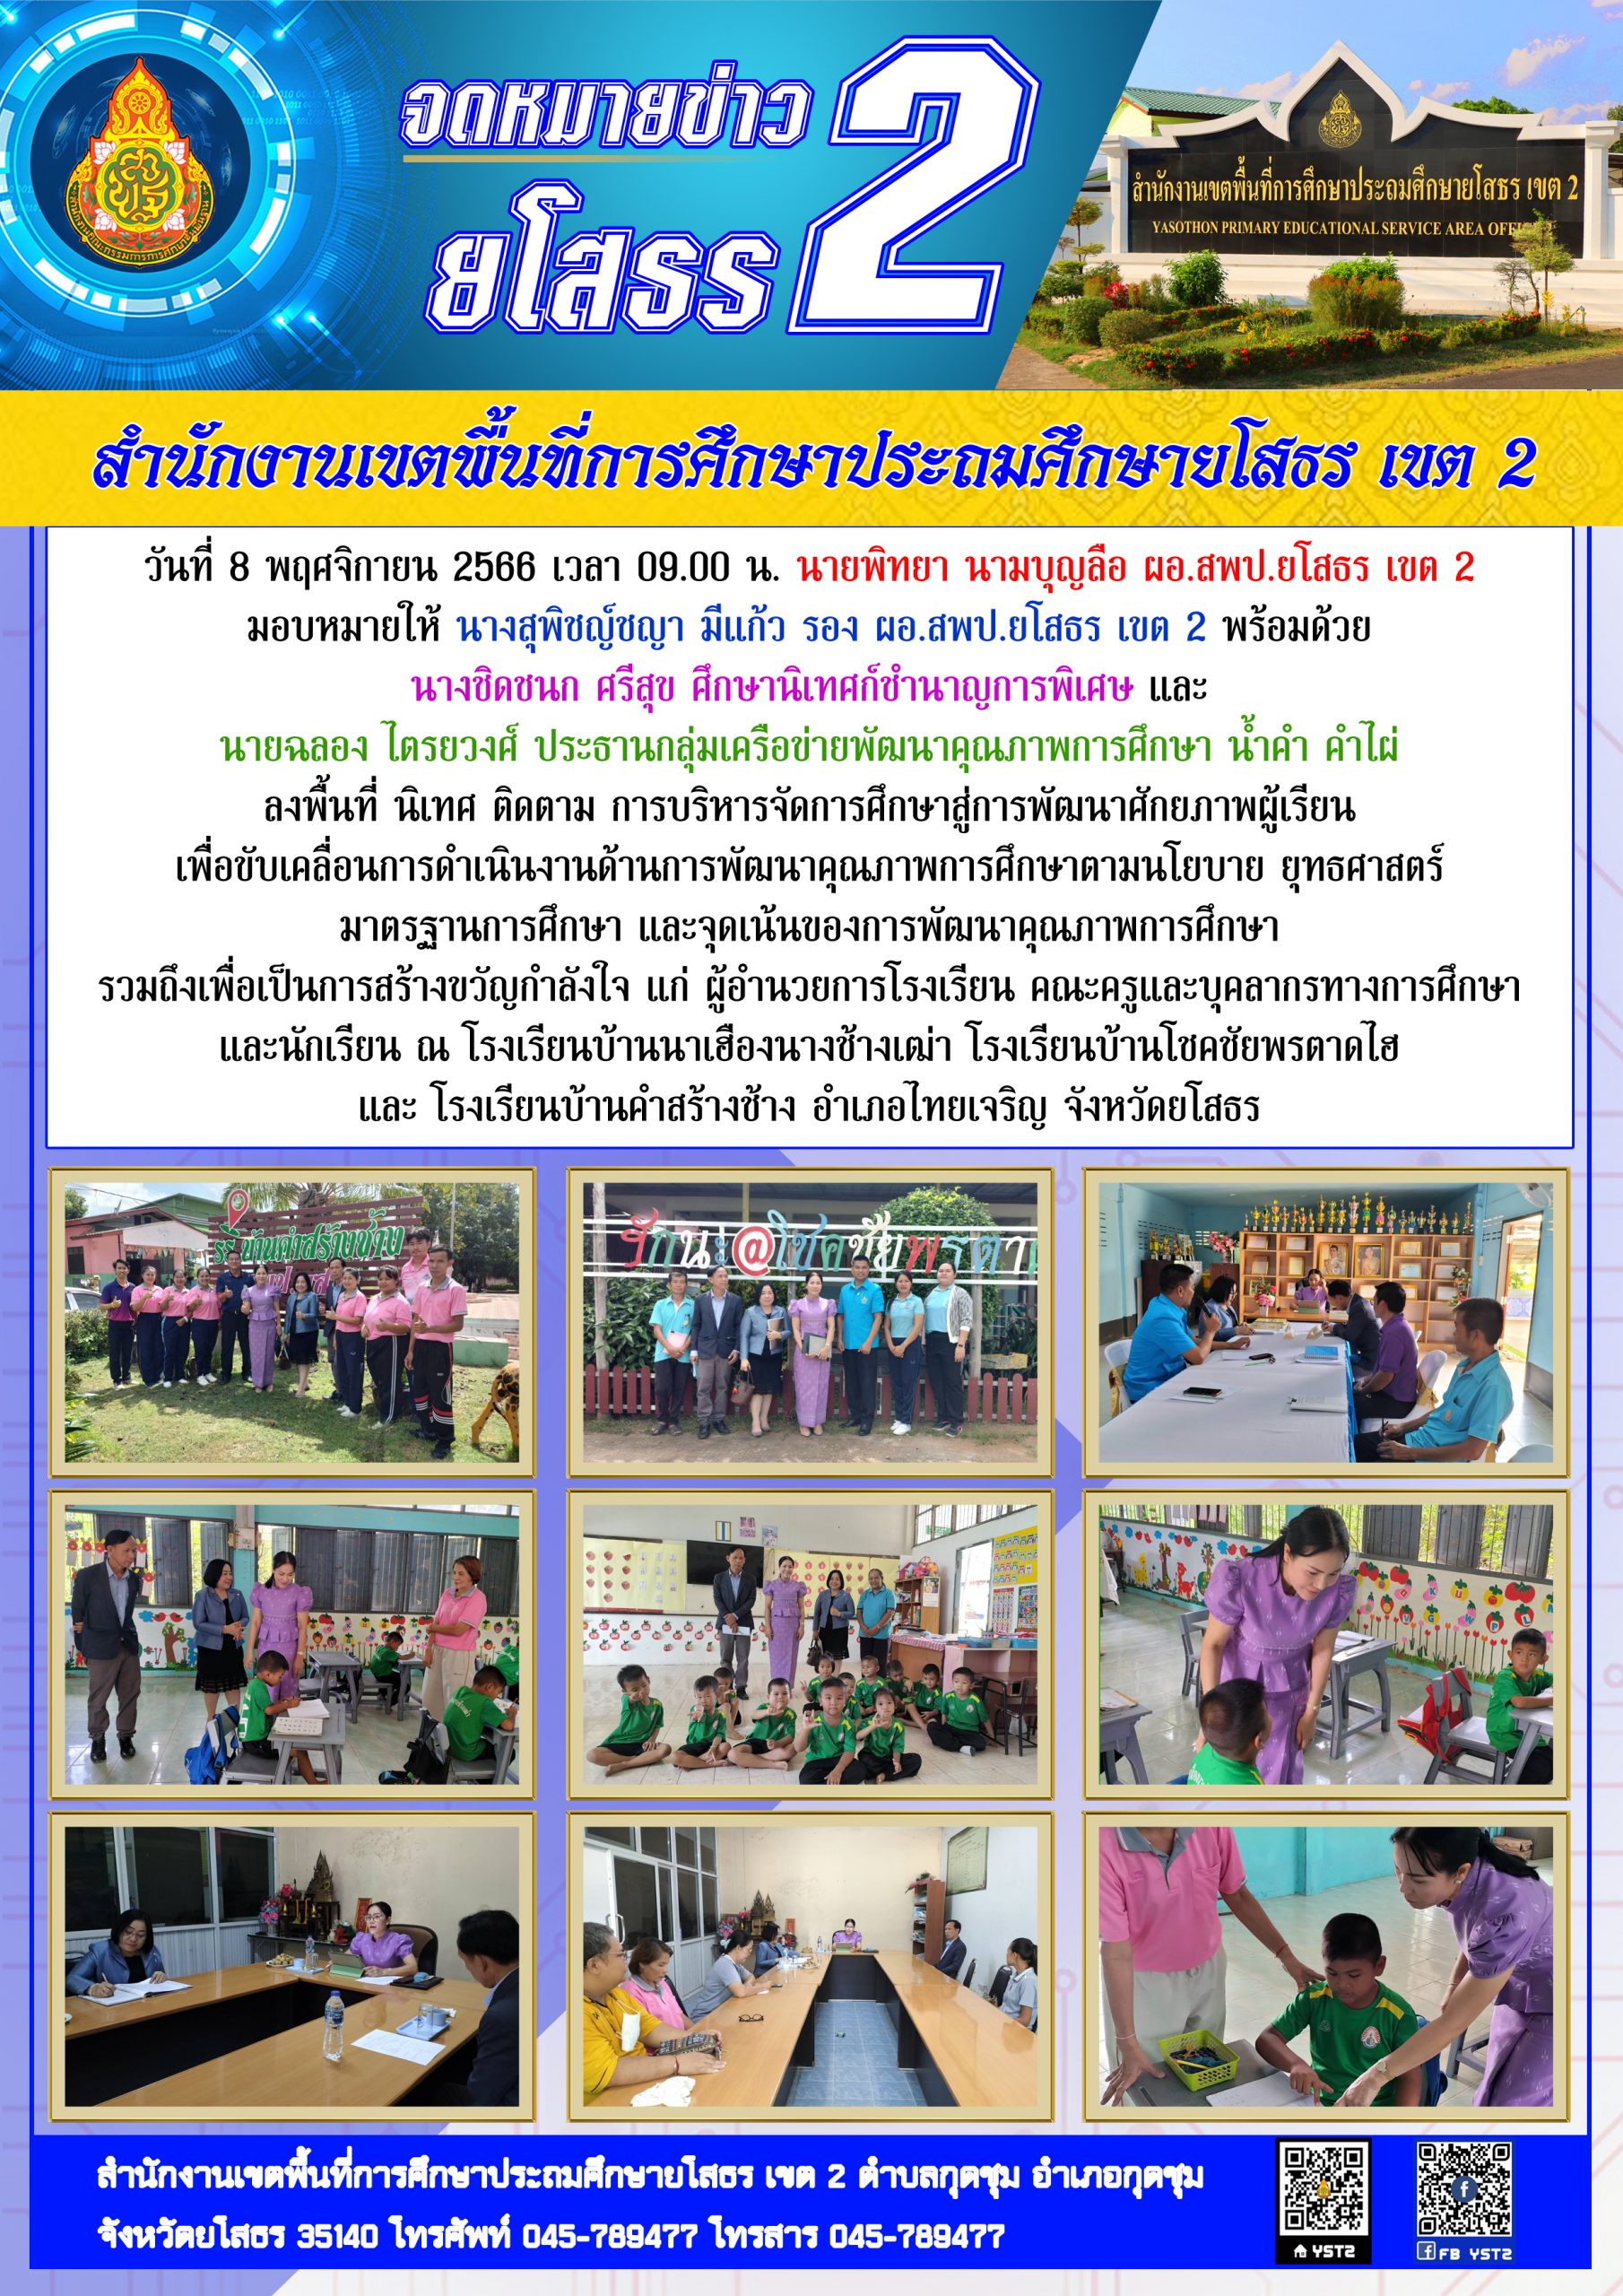 สพป.ยโสธร เขต 2 ลงพื้นที่ นิเทศ ติดตาม การบริหารจัดการศึกษาสู่การพัฒนาศักยภาพผู้เรียน ณ อำเภอไทยเจริญ จังหวัดยโสธร